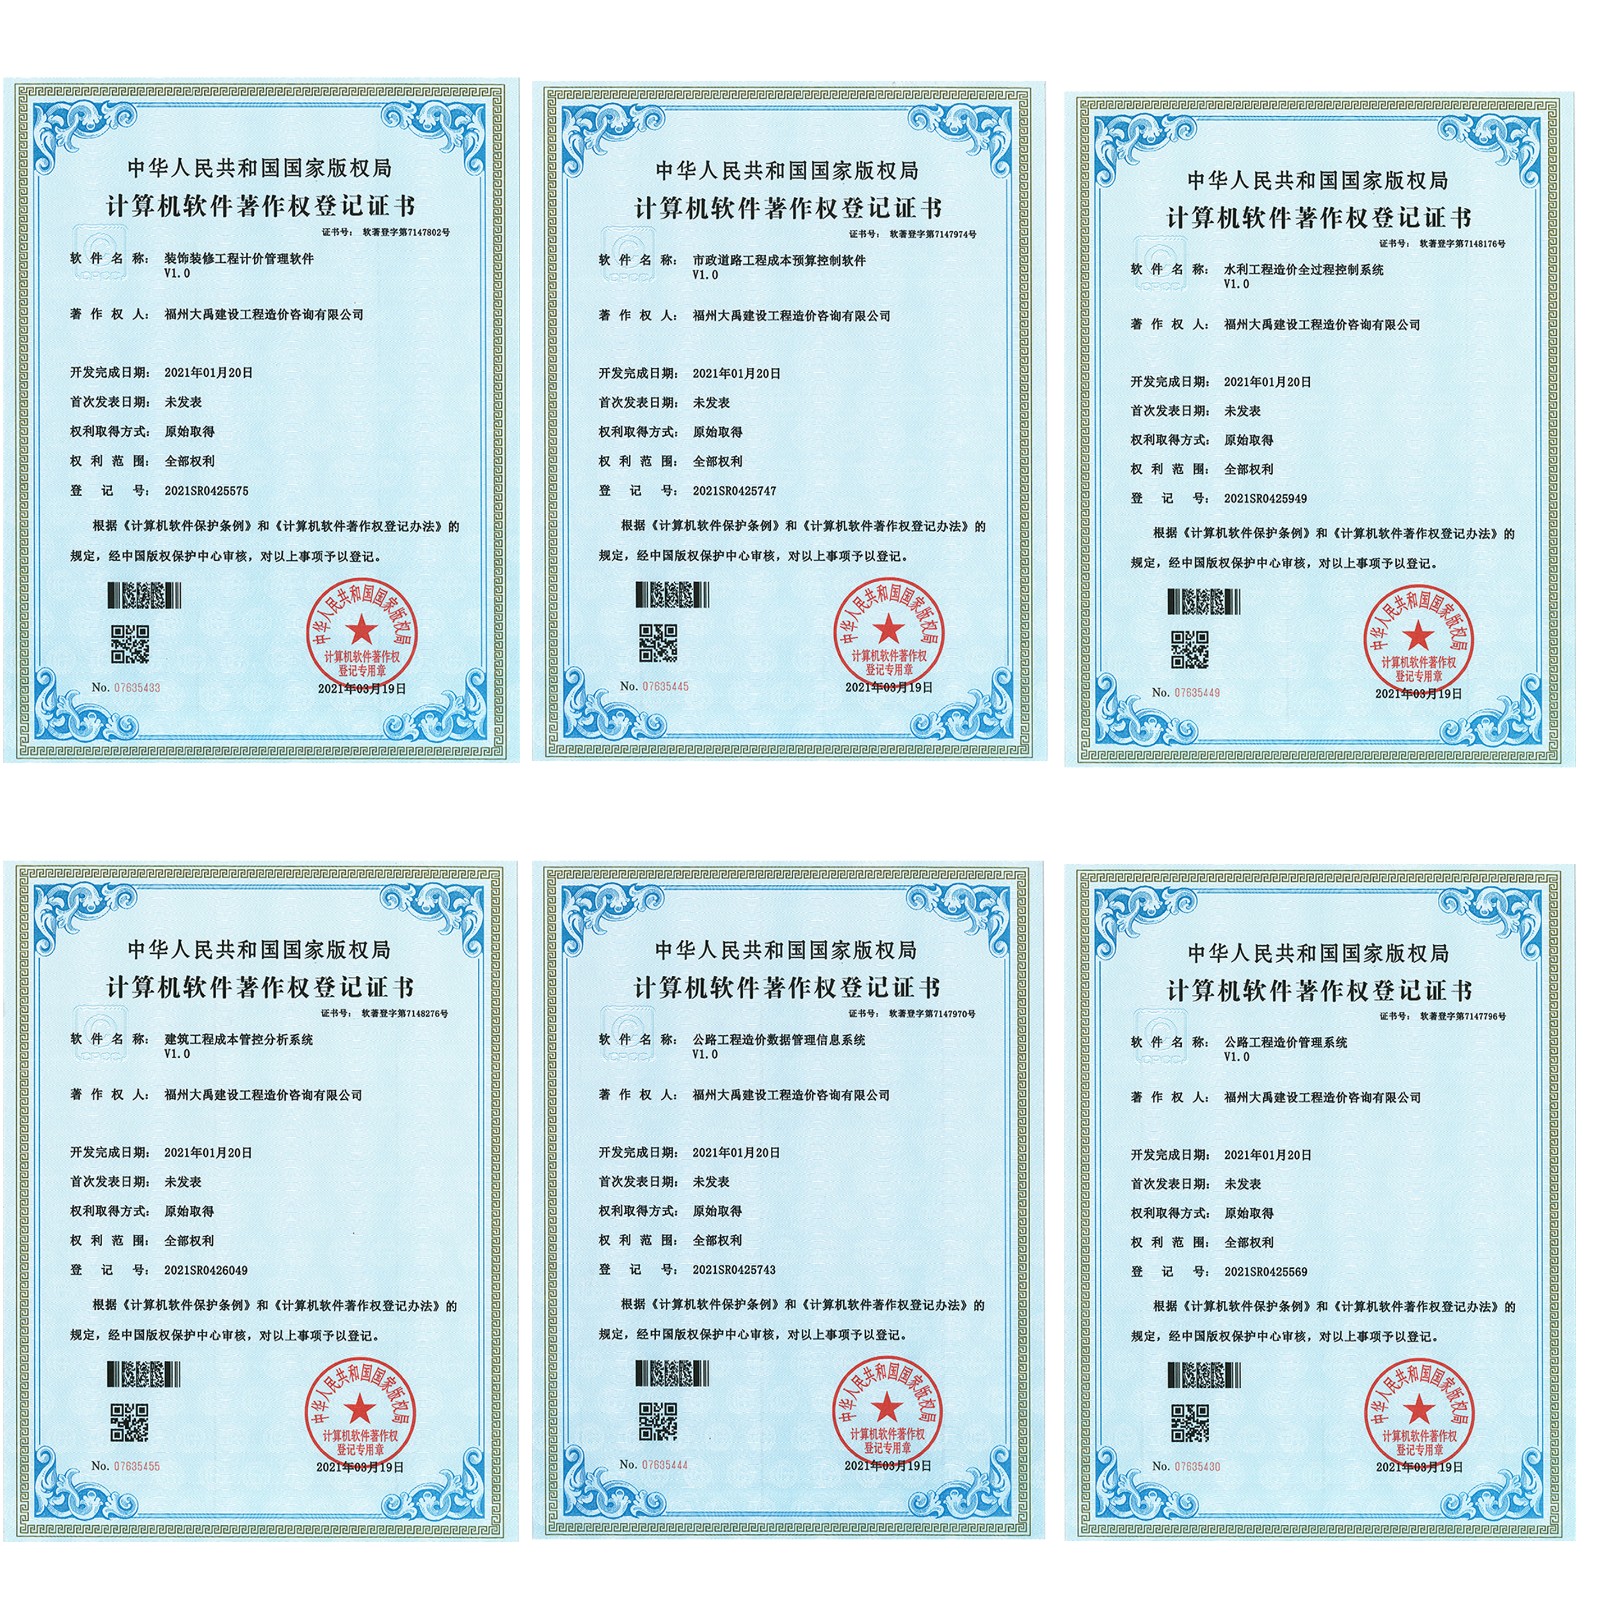 中华人民共和国国家版权局——计算机软件著作权登记证书